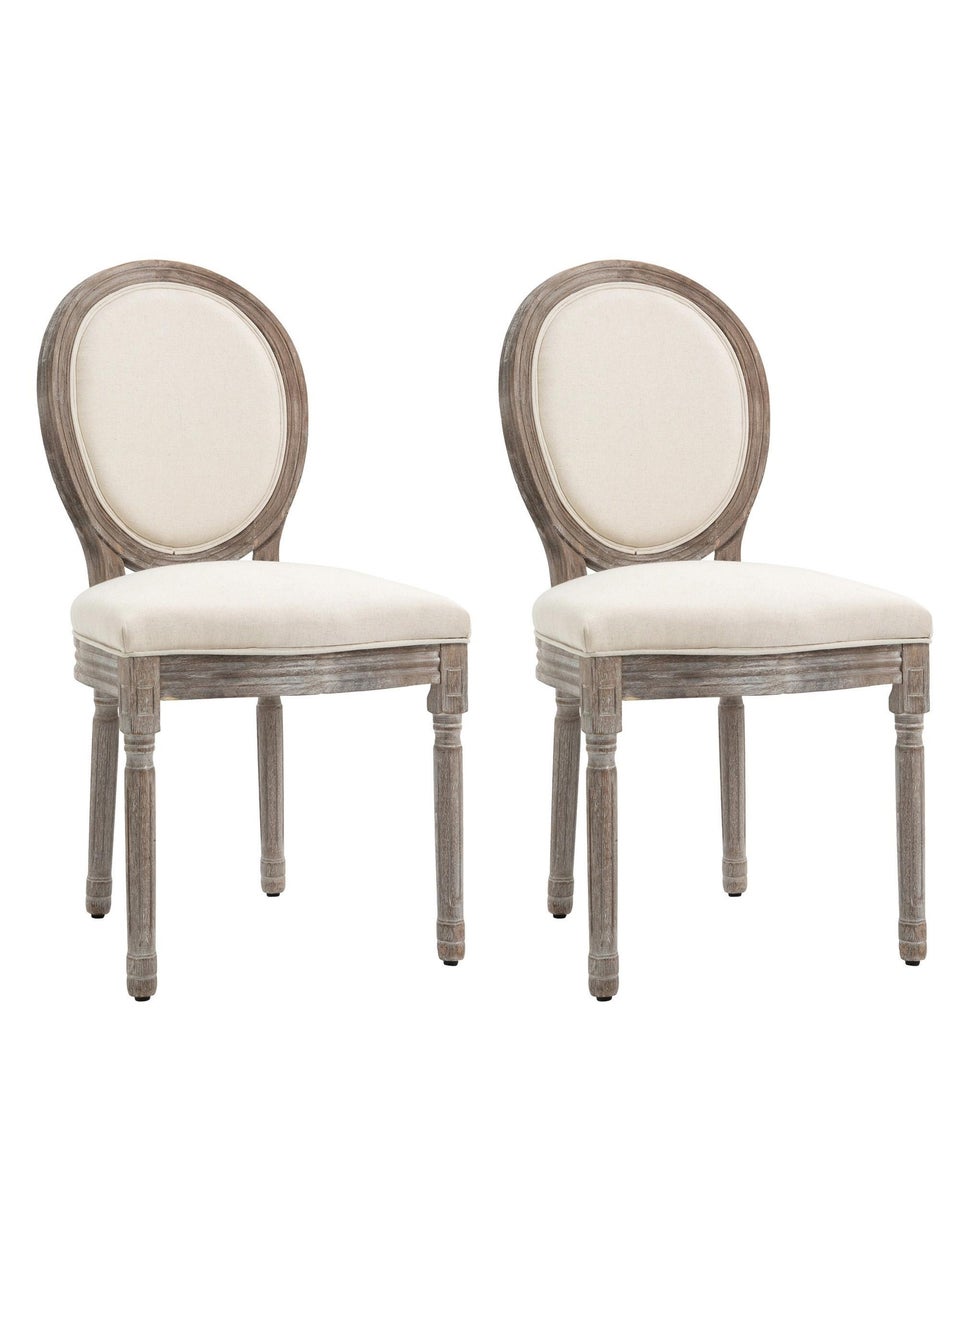 HOMCOM Cream Elegant Dining Chairs Set of 2  (51cm x 55cm x 96cm)